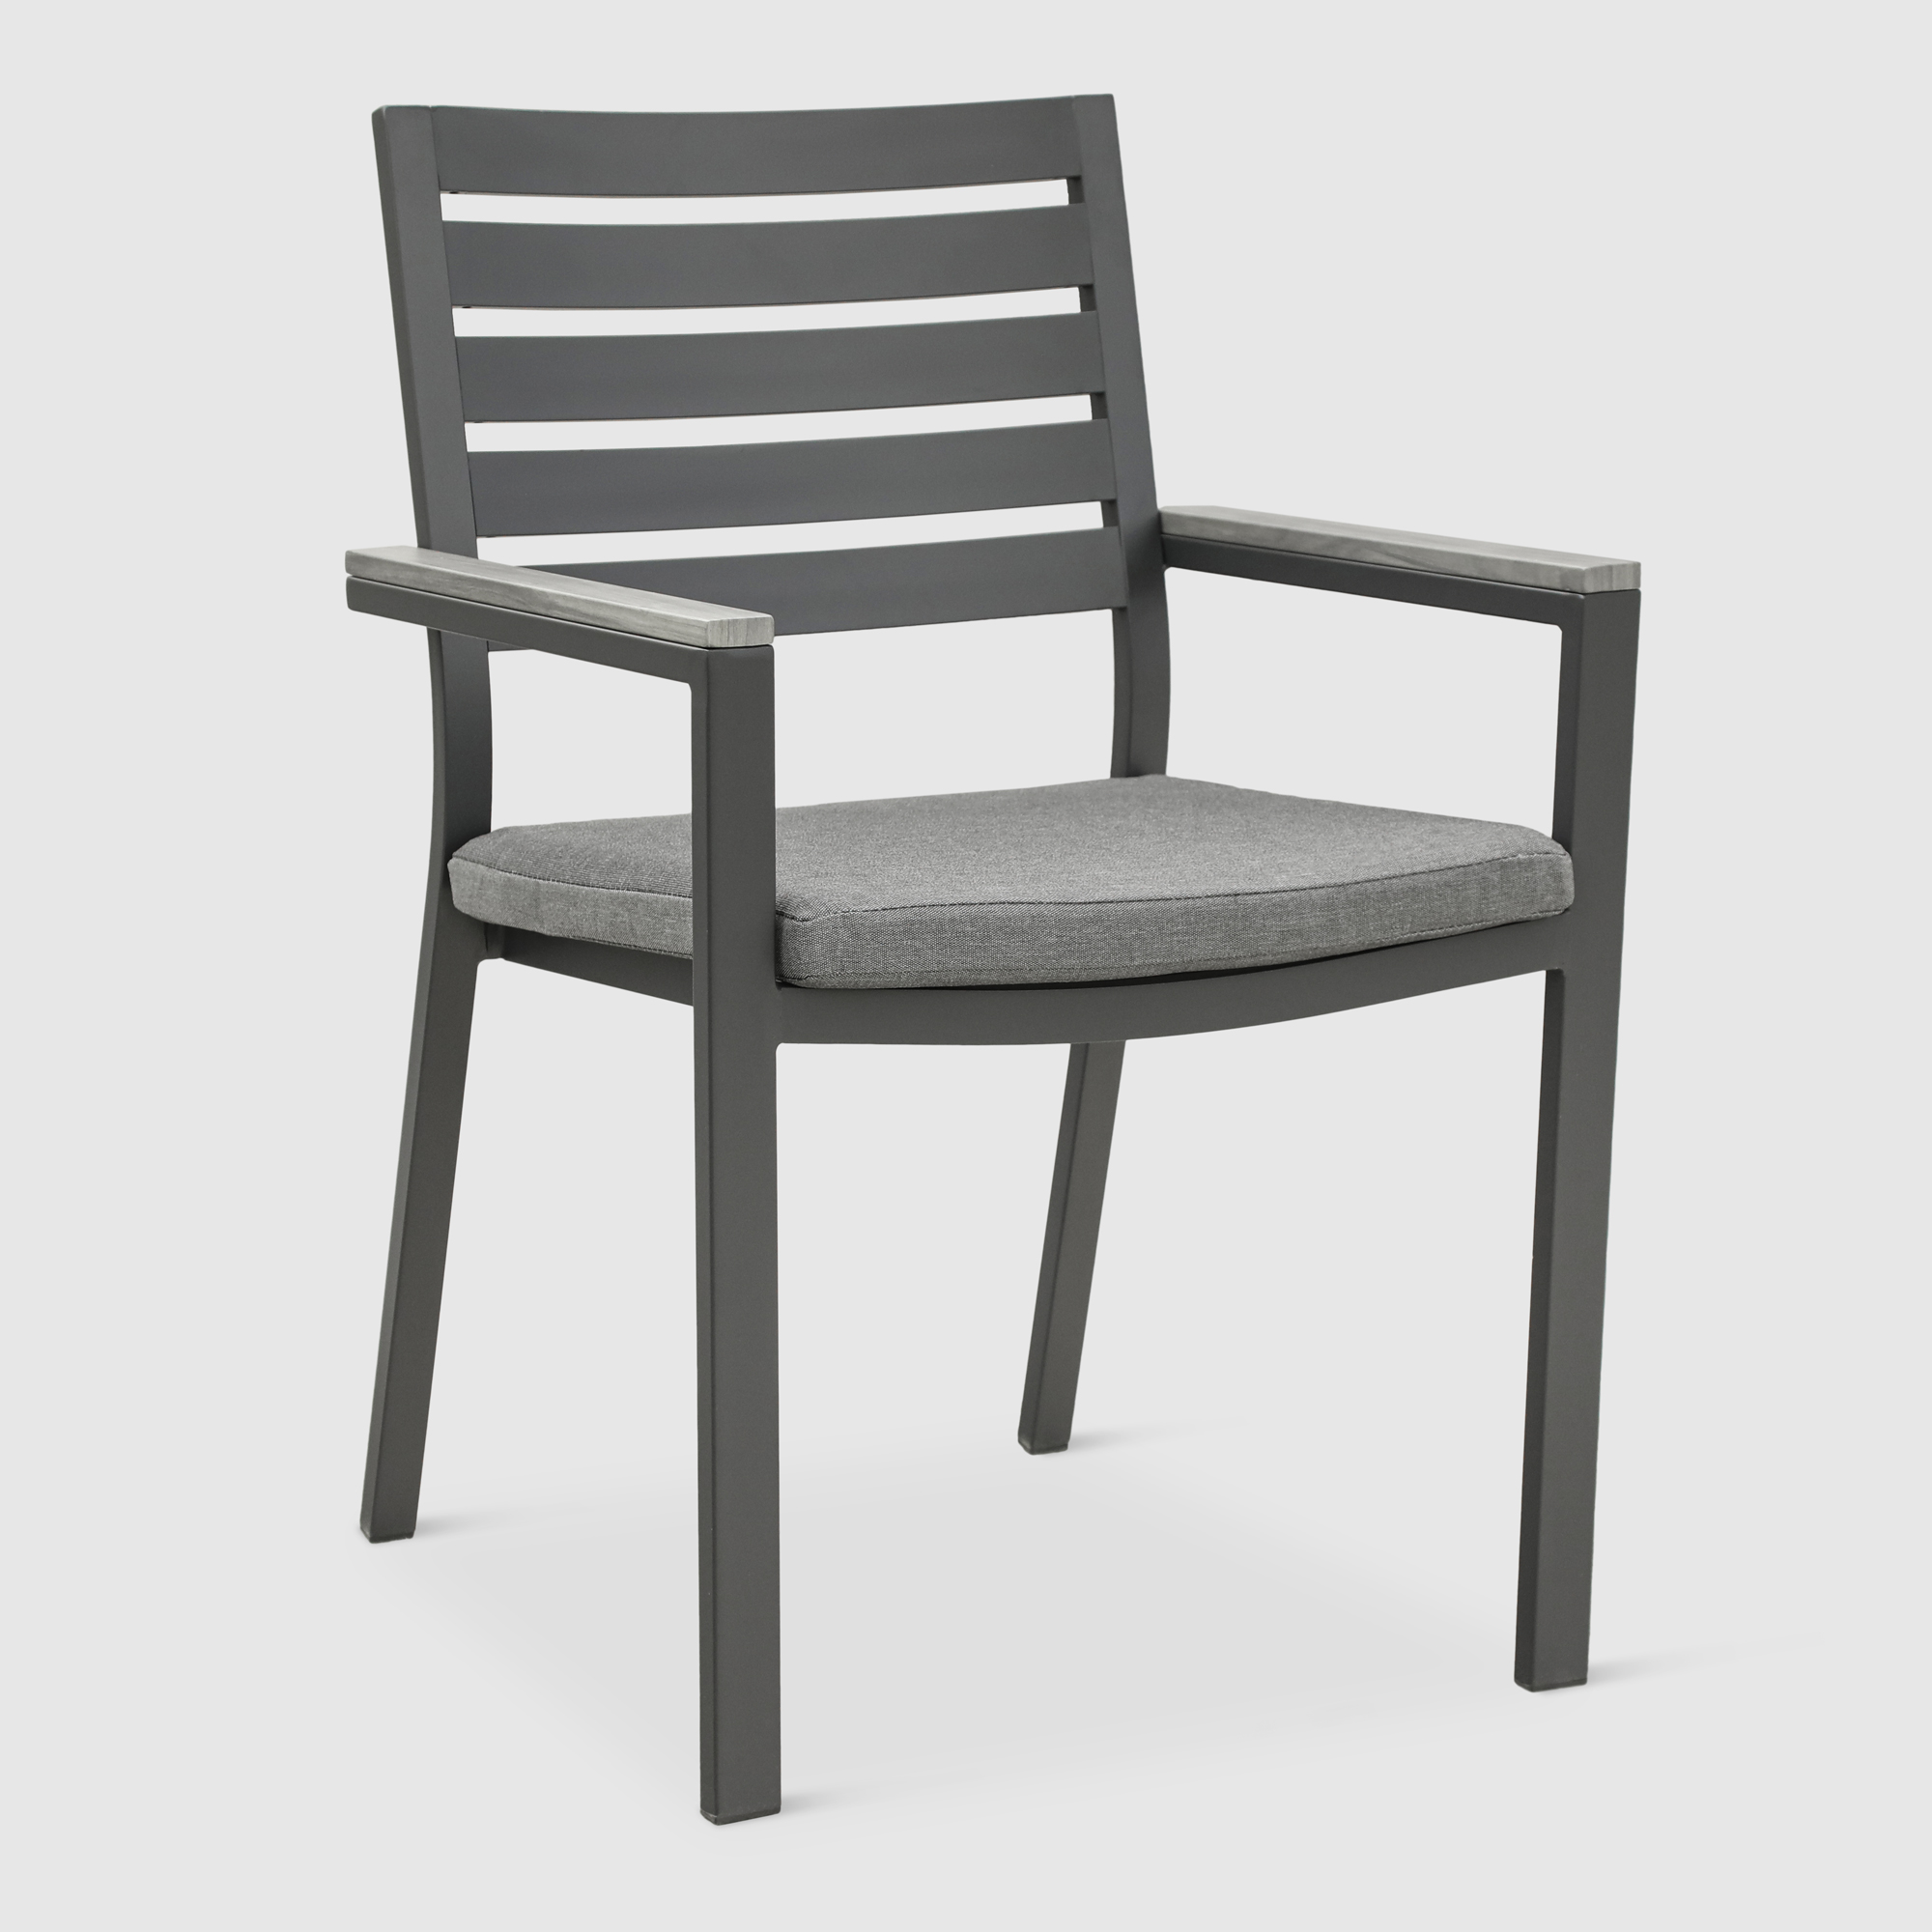 Комплект мебели Bizzotto угольный 11 предметов, цвет серый, размер 56х62х88 - фото 11